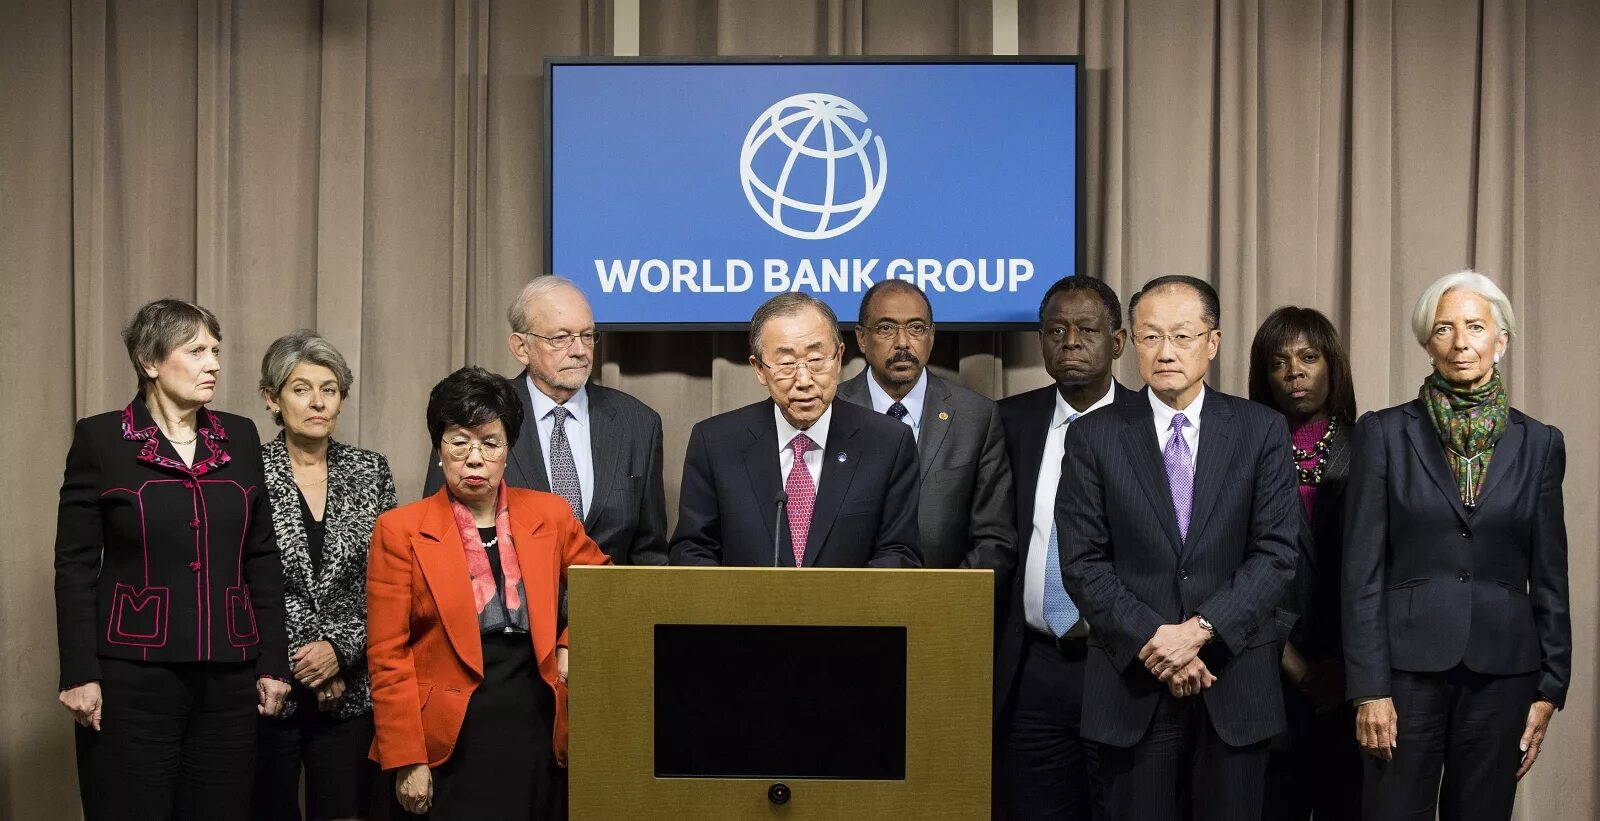 Всемирный банк развития. Всемирный банк ООН. Всемирный банк международные организации. Группа Всемирного банка. Всемирный банк картинки.